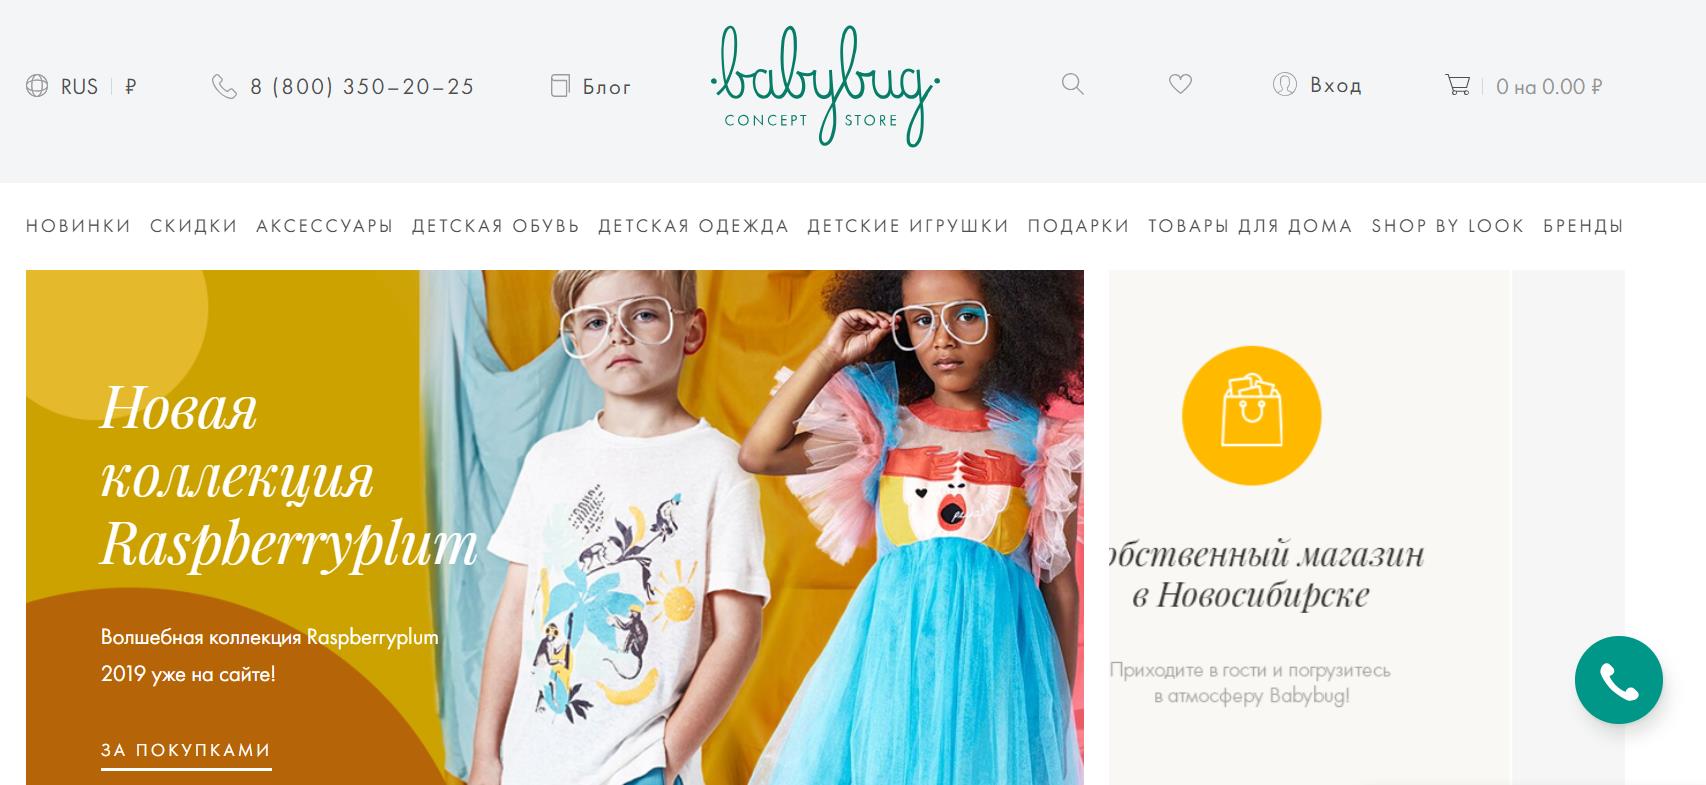 Интернет магазин детской одежды BabyBug - Модная одежда для детей от самых известных брендов